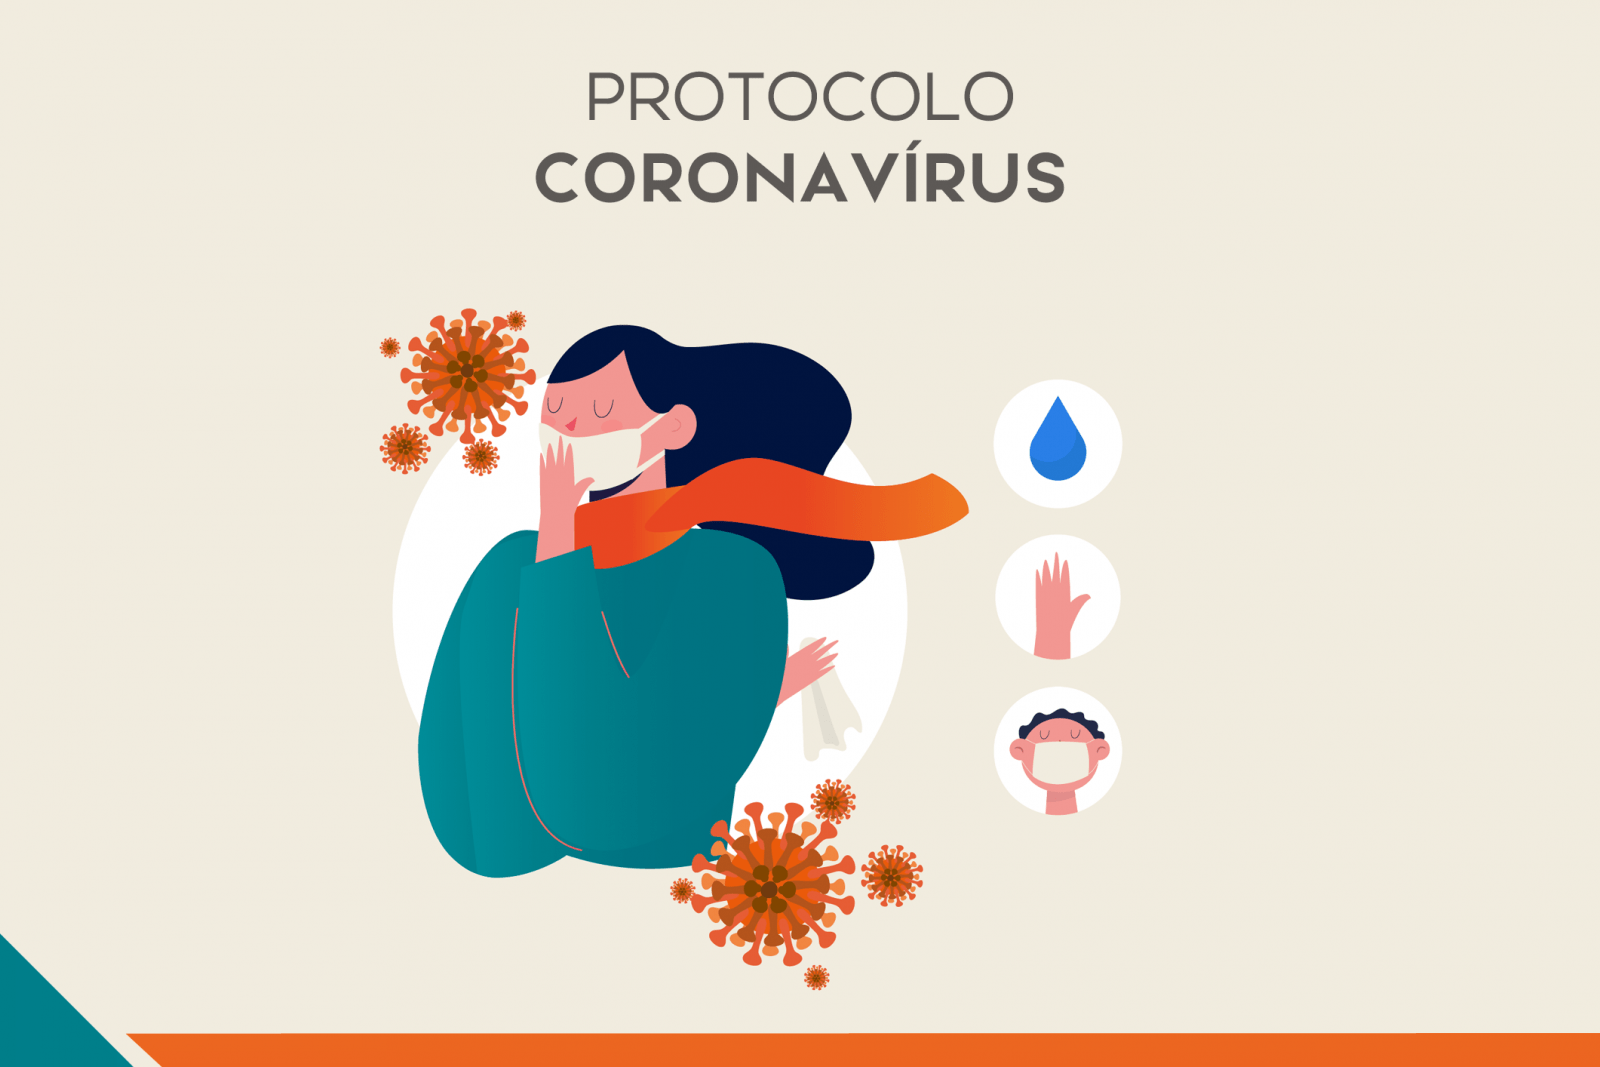 Protocolo Coronavírus